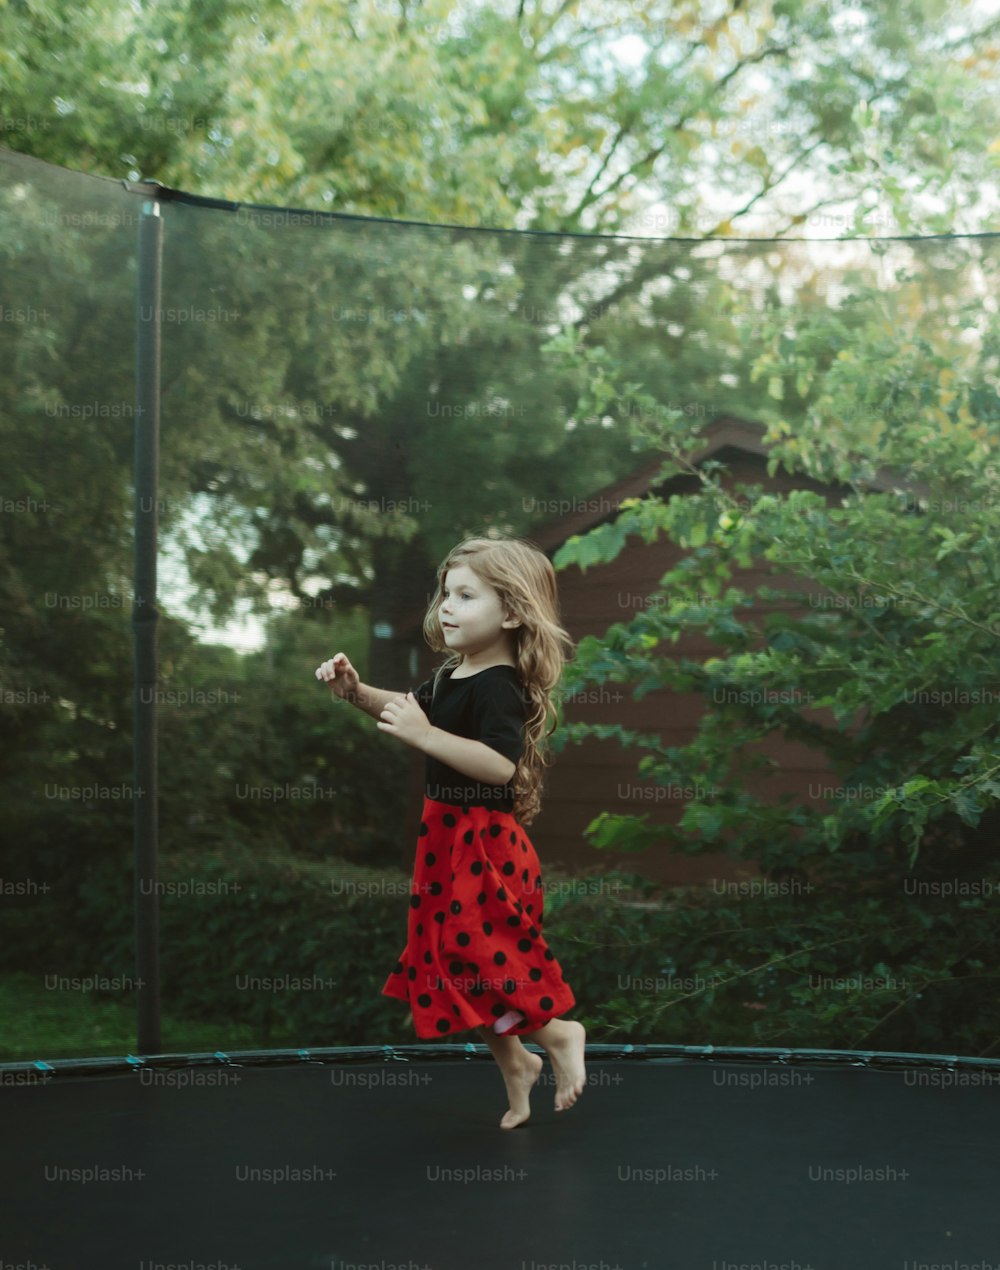 Una niña está saltando en un trampolín